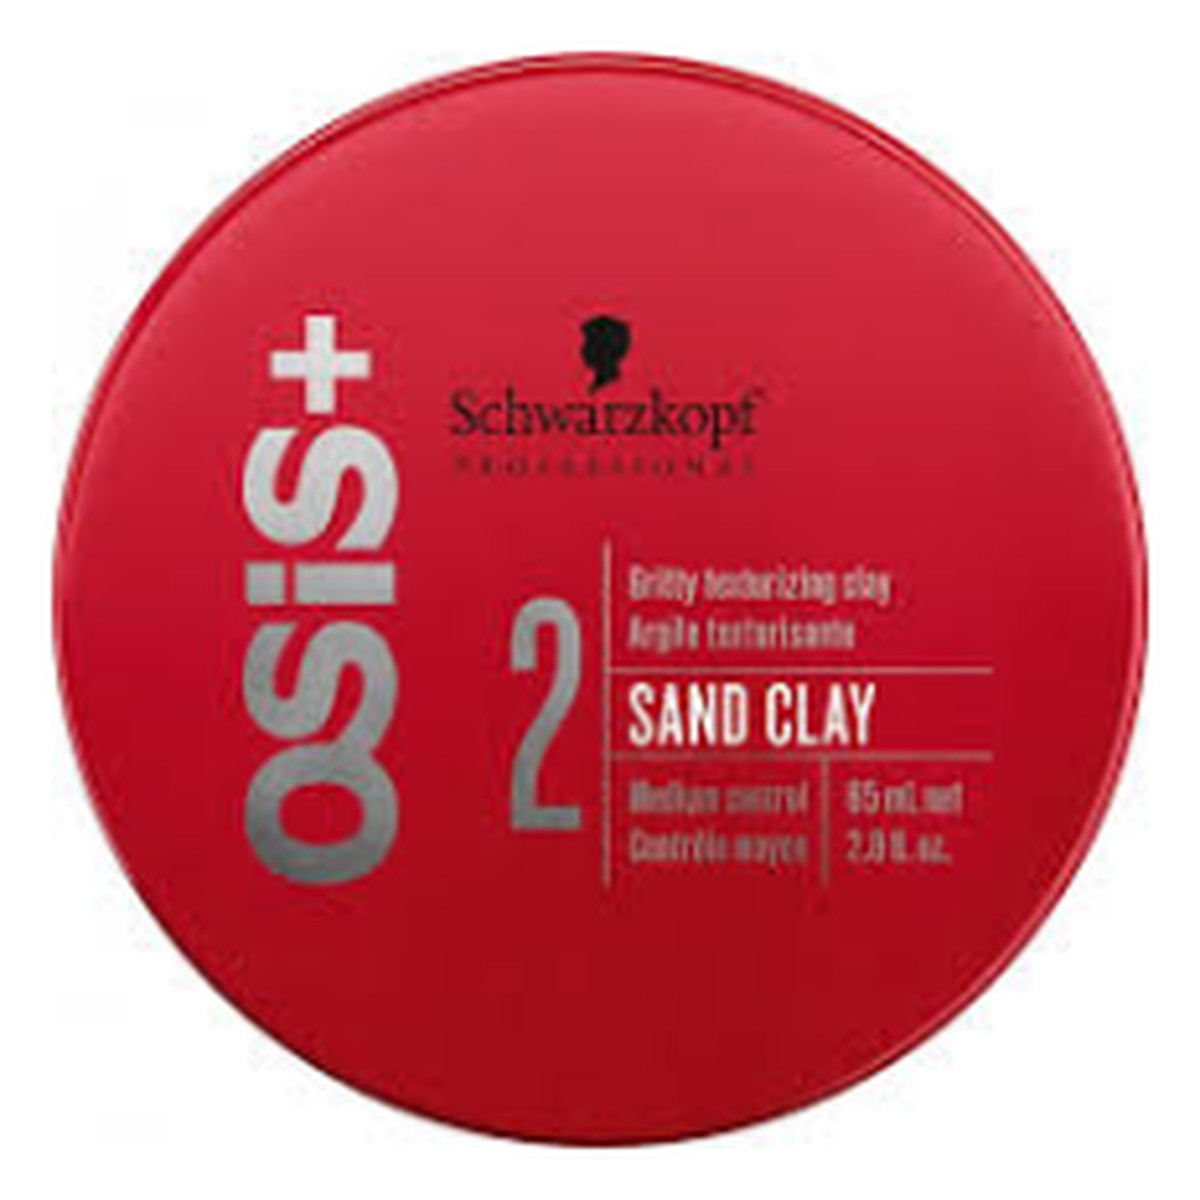 Schwarzkopf Osis+ Sand Clay Gritty Texturizing ziarnisty klej nadający teksturę 85ml